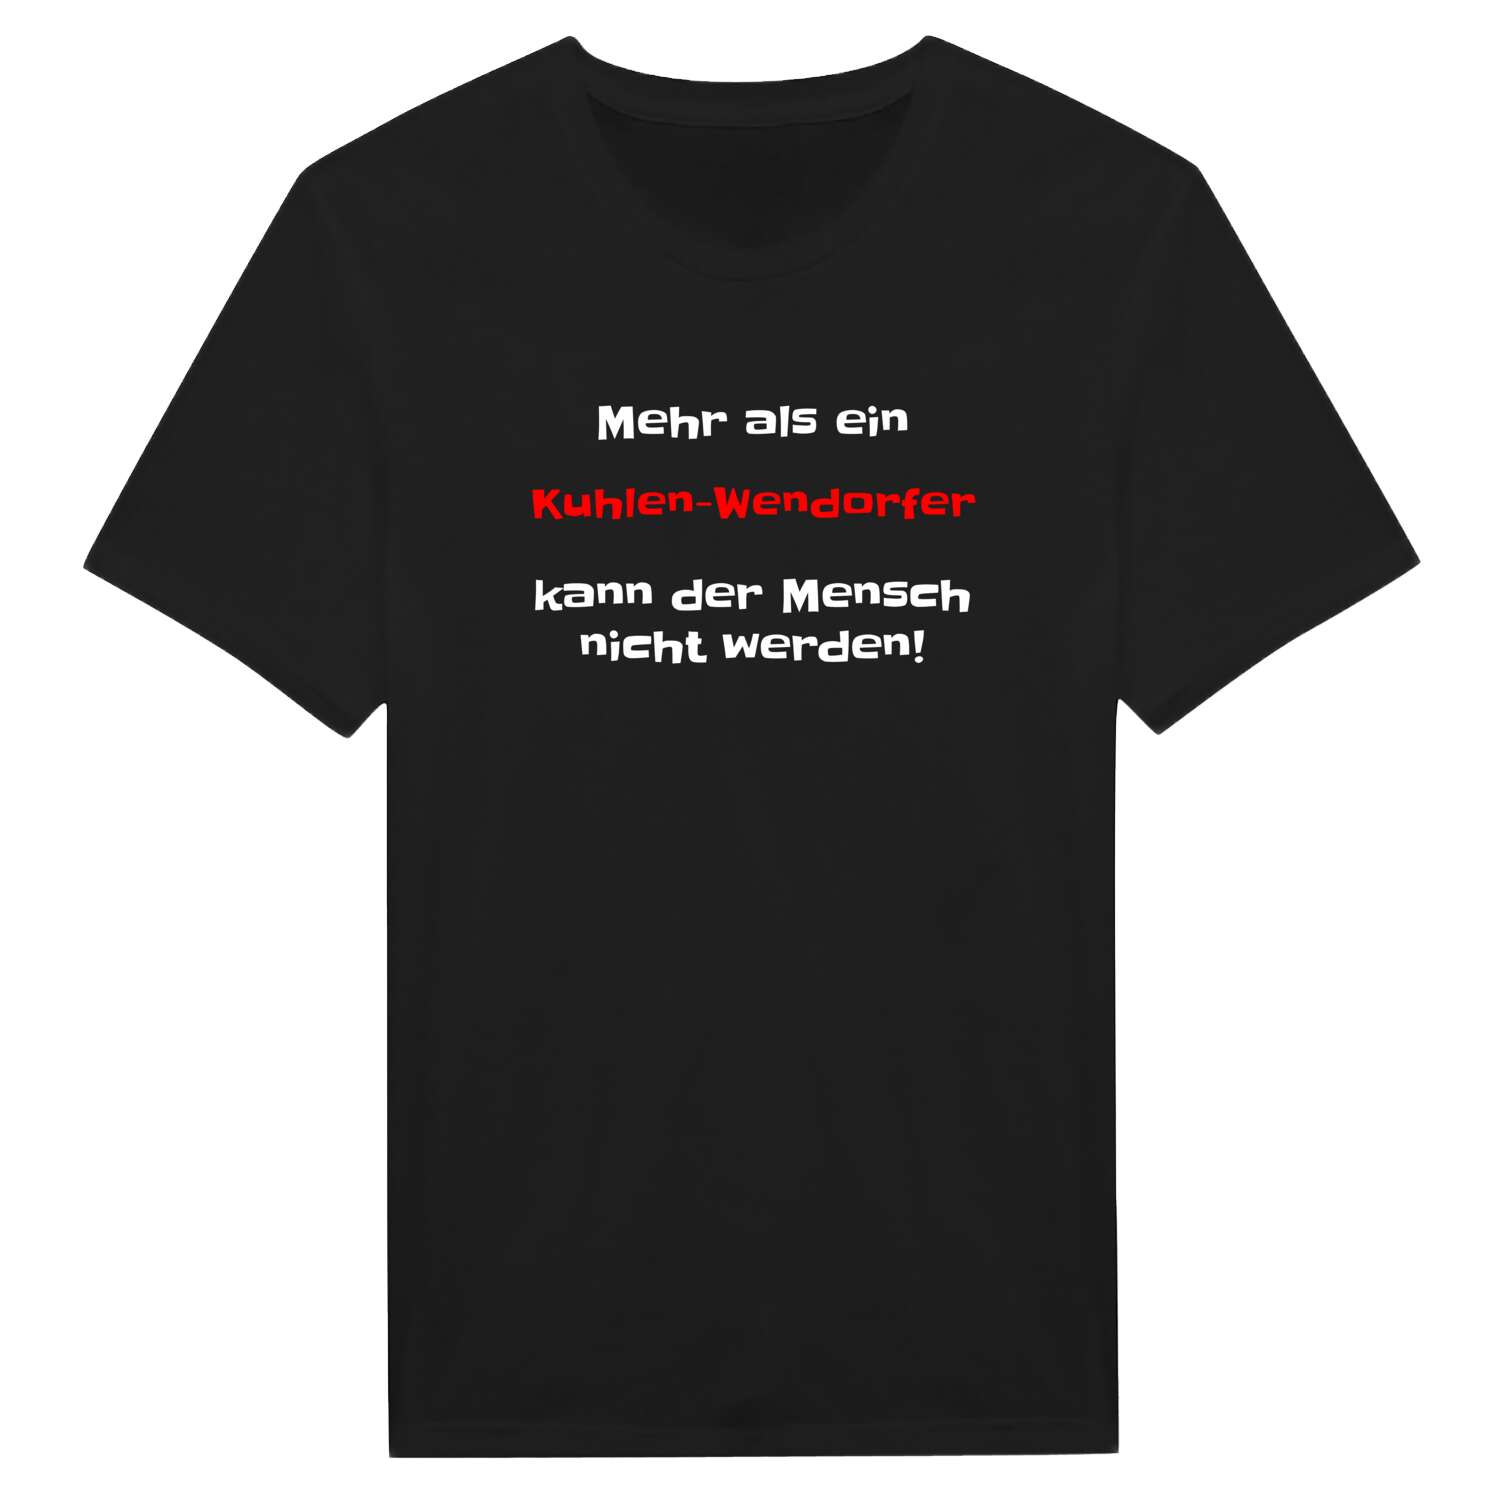 Kuhlen-Wendorf T-Shirt »Mehr als ein«